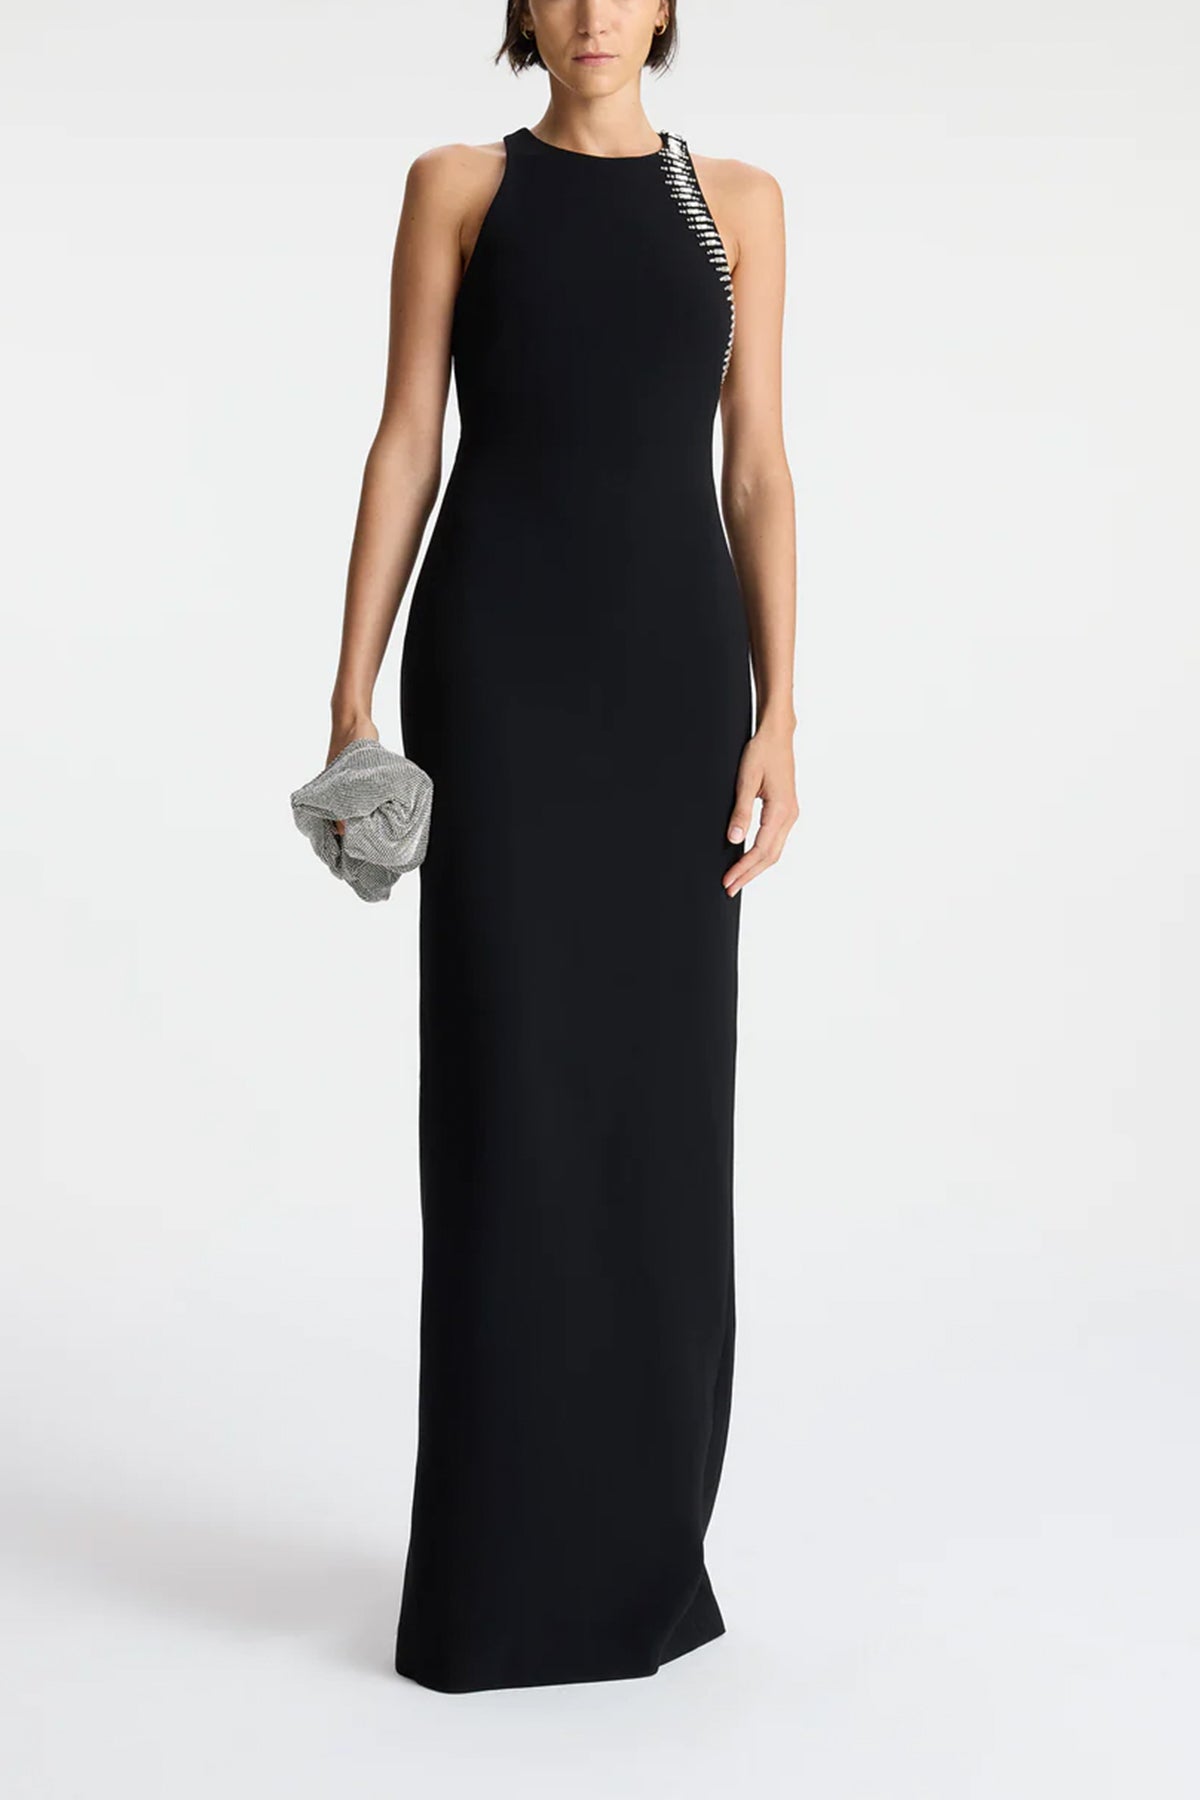 Skyler Embellished Open Back Dress in Black - shop-olivia.com